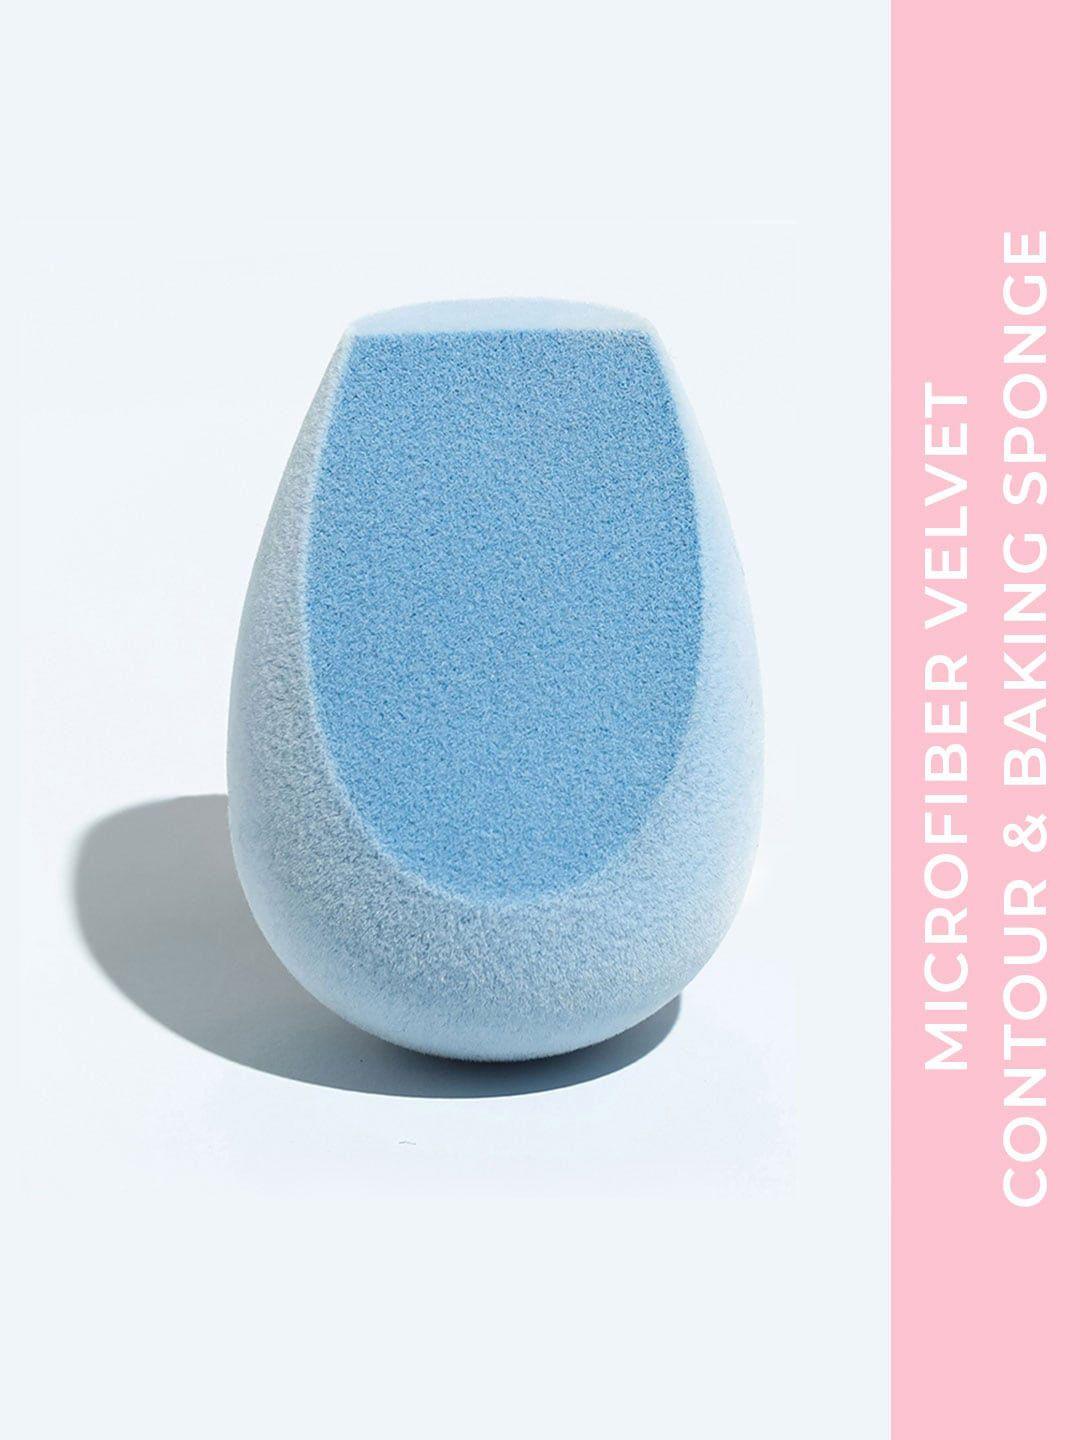 praush microfiber velvet contour & baking makeup sponge - blue